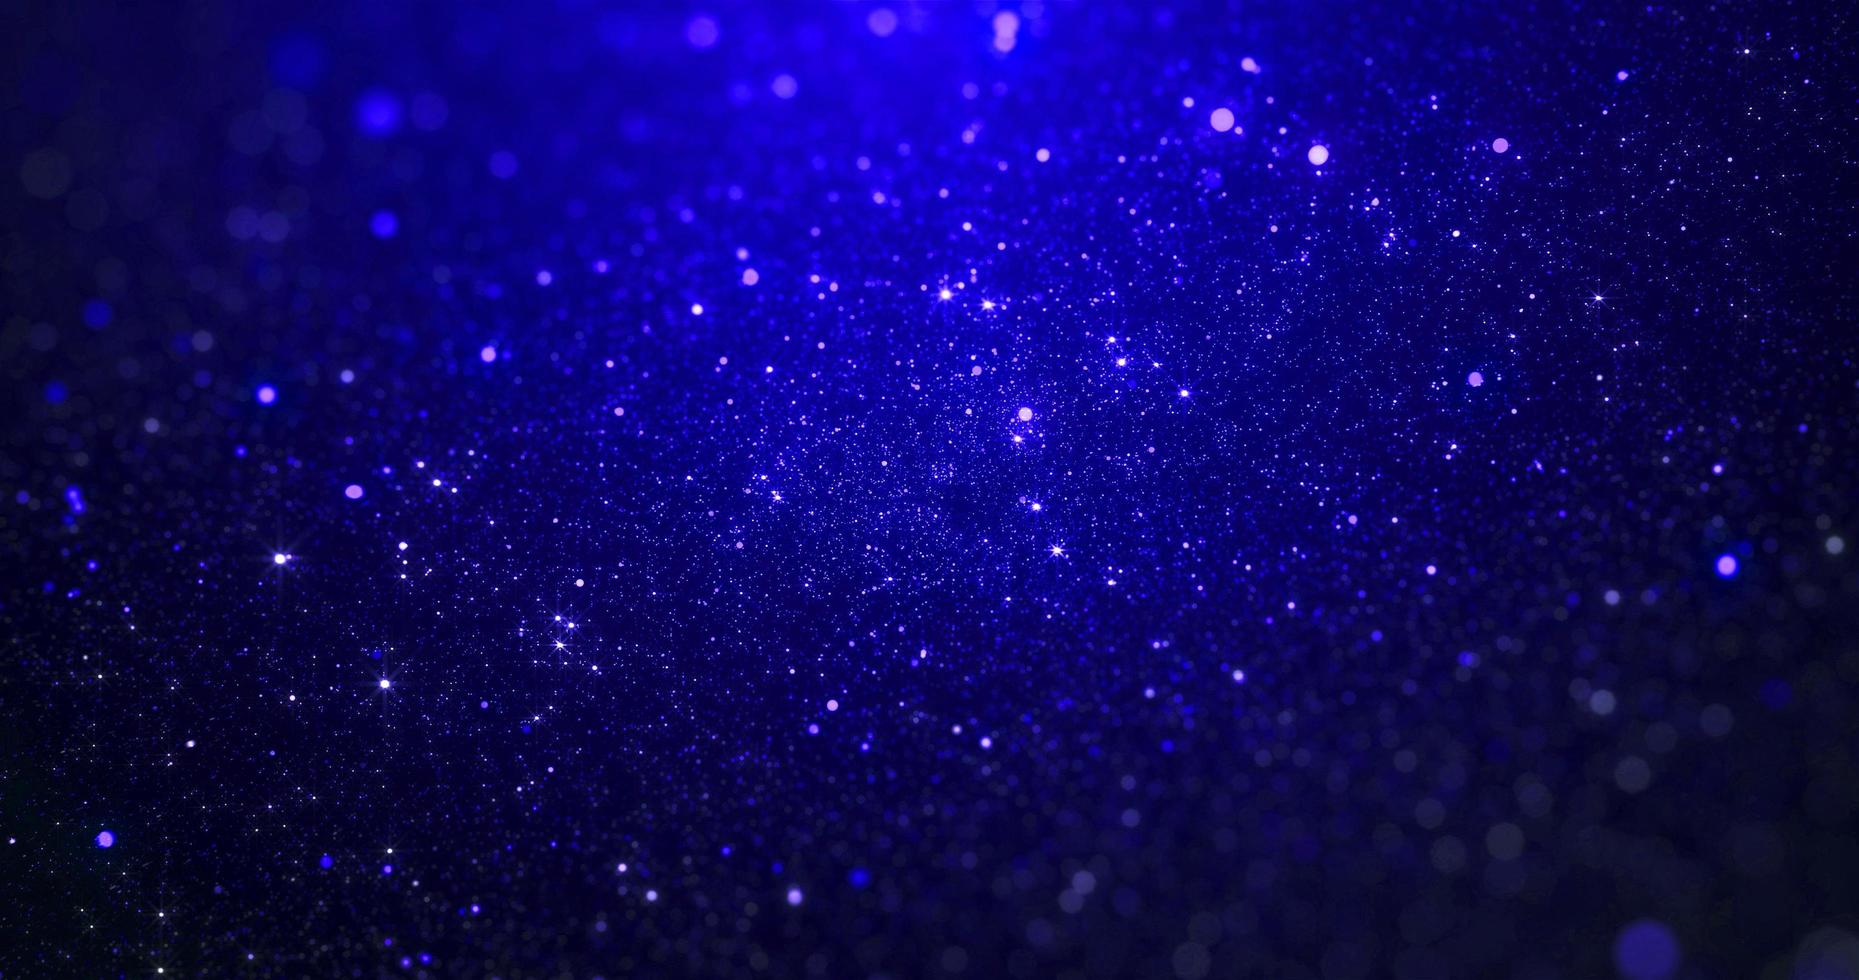 luxo moderno azul roxa espaço galáxia estrelas queda bokeh brilhar dourado queda partículas cintilar para mostrar reconhecimento prêmio noite moda evento noite show celebridade Casamento cerimônia festival foto